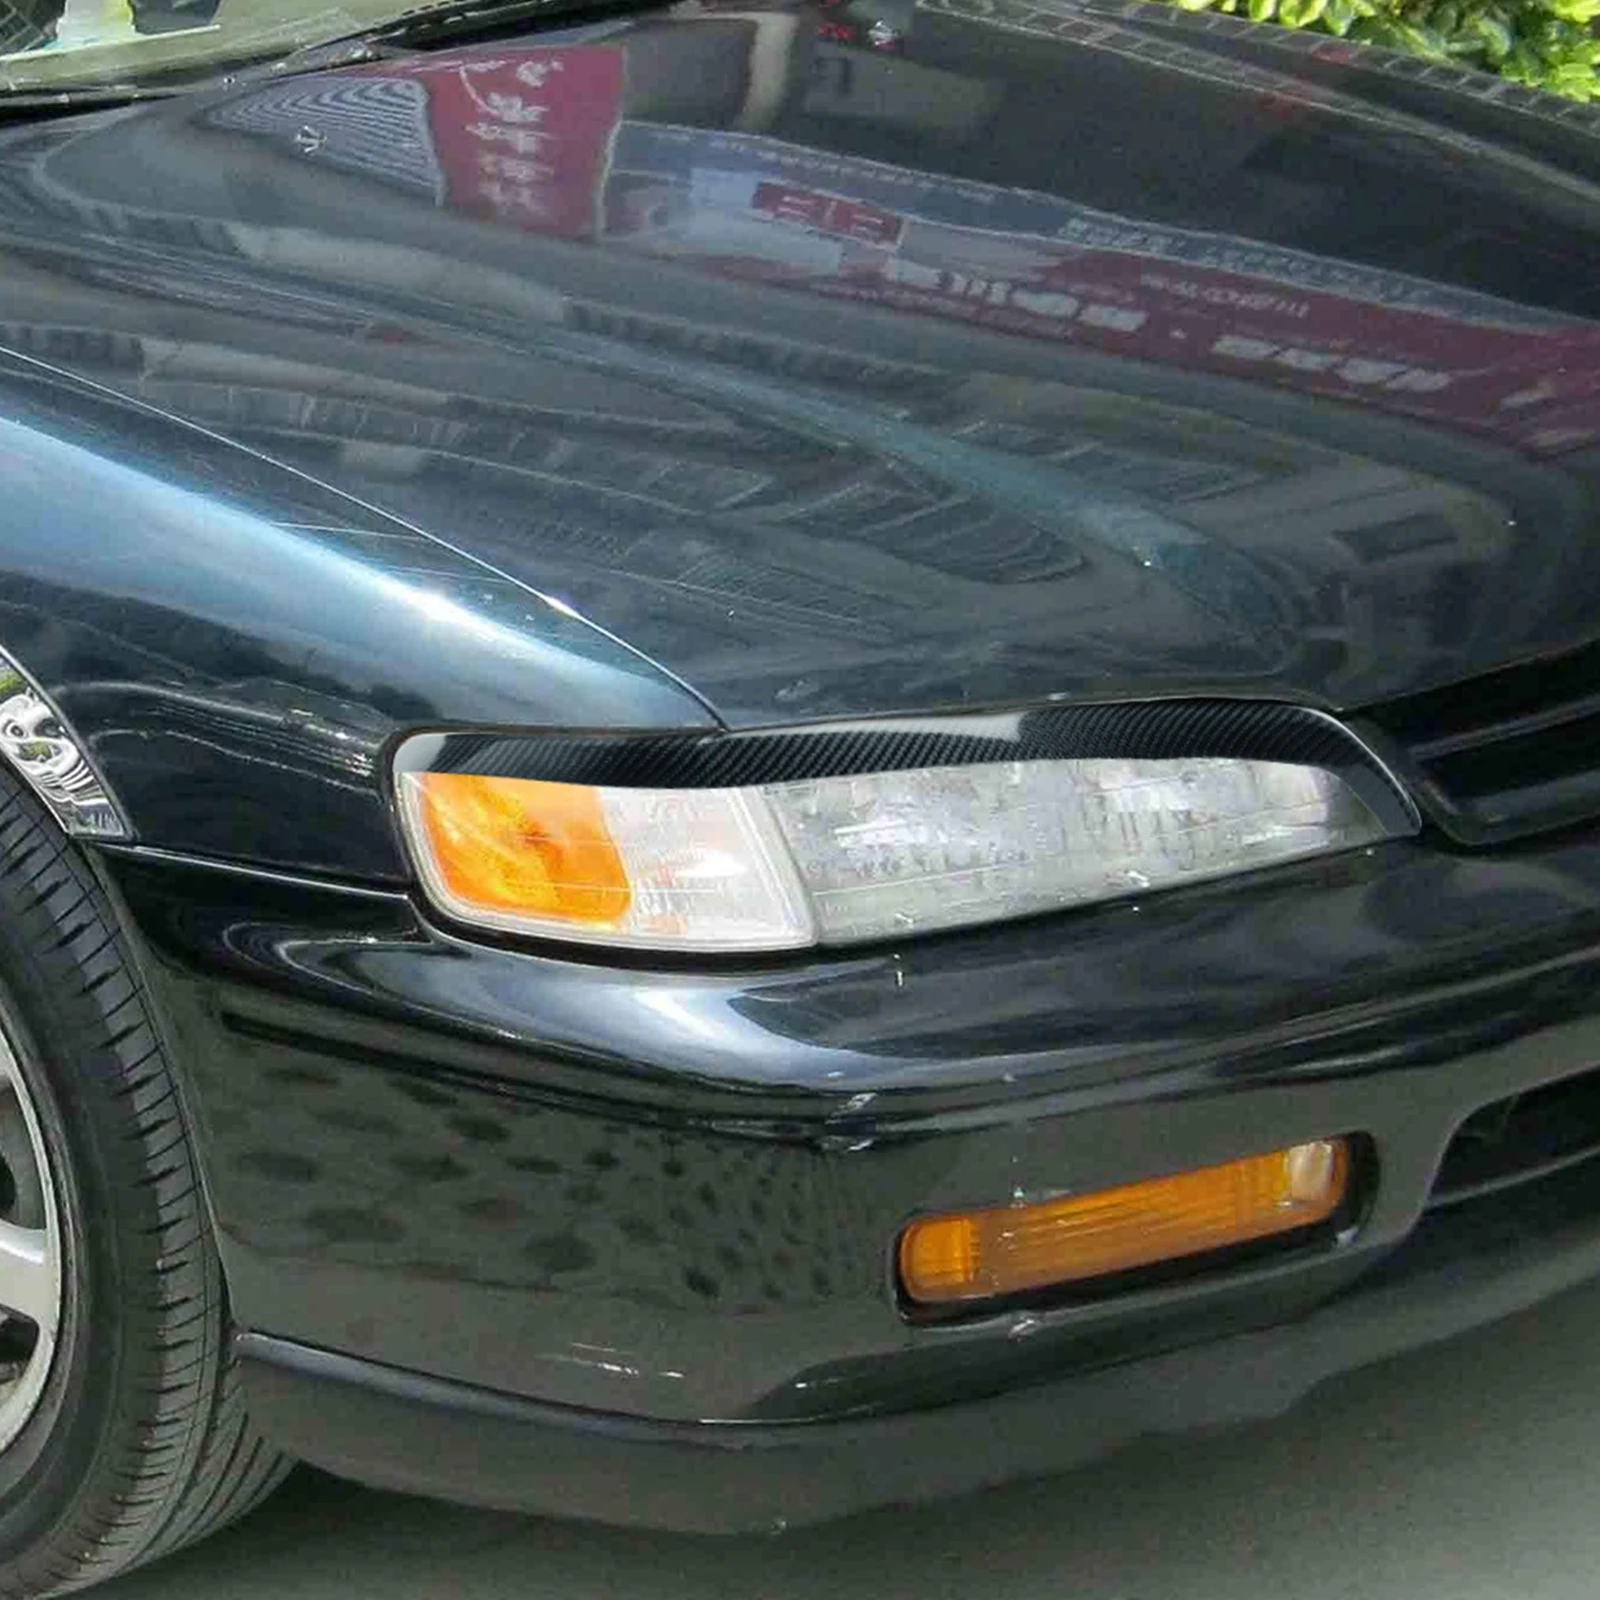 עבור הונדה אקורד 1994-97 מכוניות הגבה פנס העפעף לקצץ סיבי פחמן לפני ראש אור המנורה בראו כיסוי רצועת מדבקה